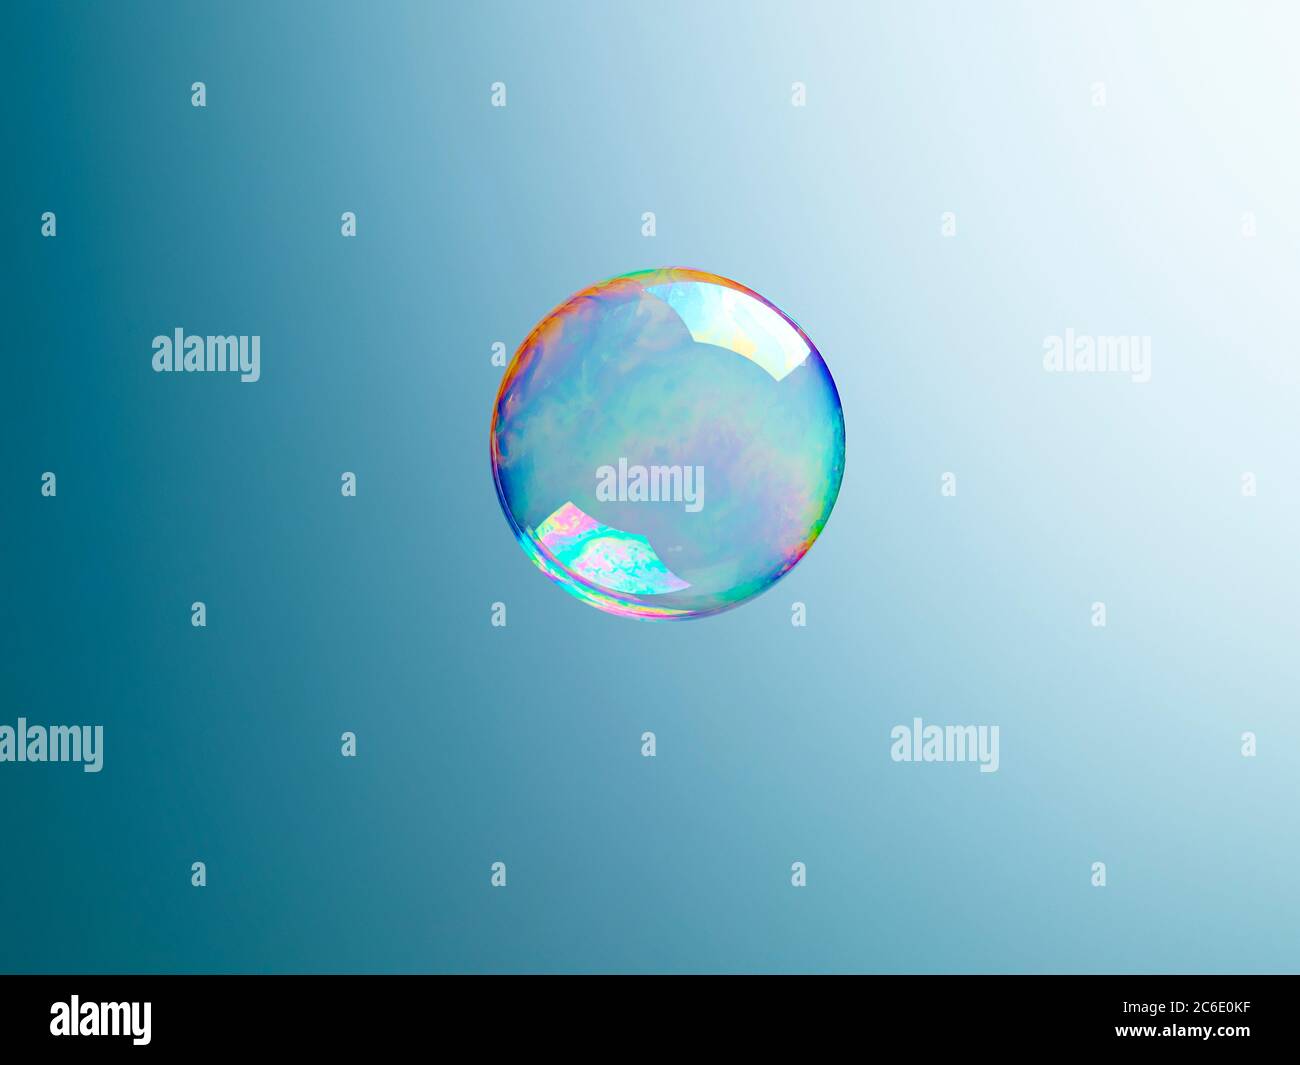 Translucent bubble on blue background Stock Photo